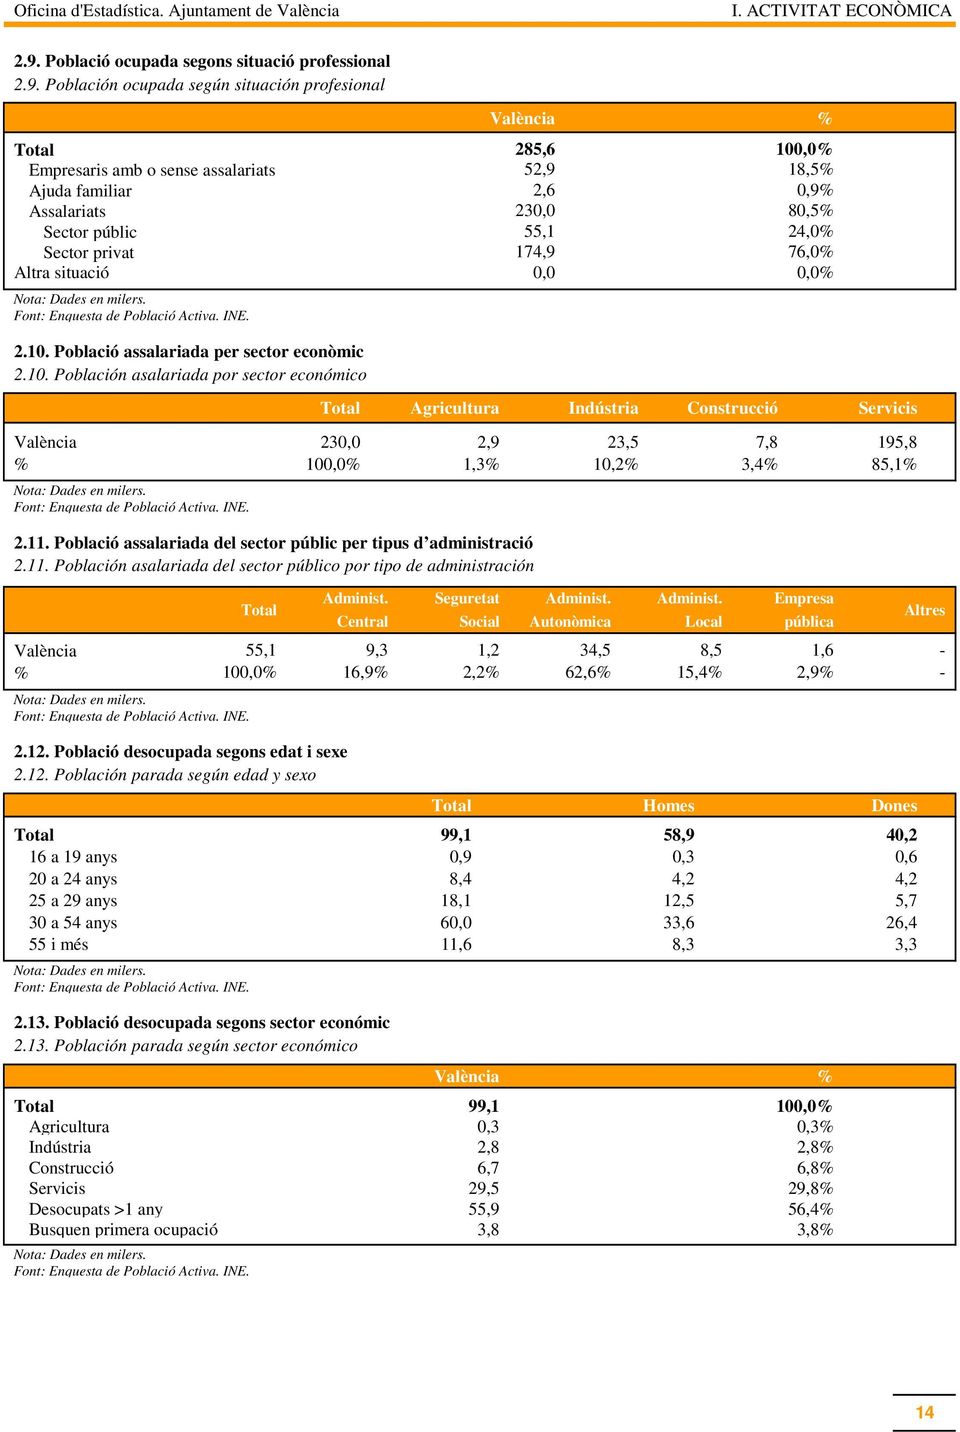 Población asalariada por sector económico València % Empresaris amb o sense assalariats Ajuda familiar Assalariats Sector públic Sector privat 285,6 52,9 2,6 230,0 55,1 174,9 100,0% 18,5% 0,9% 80,5%